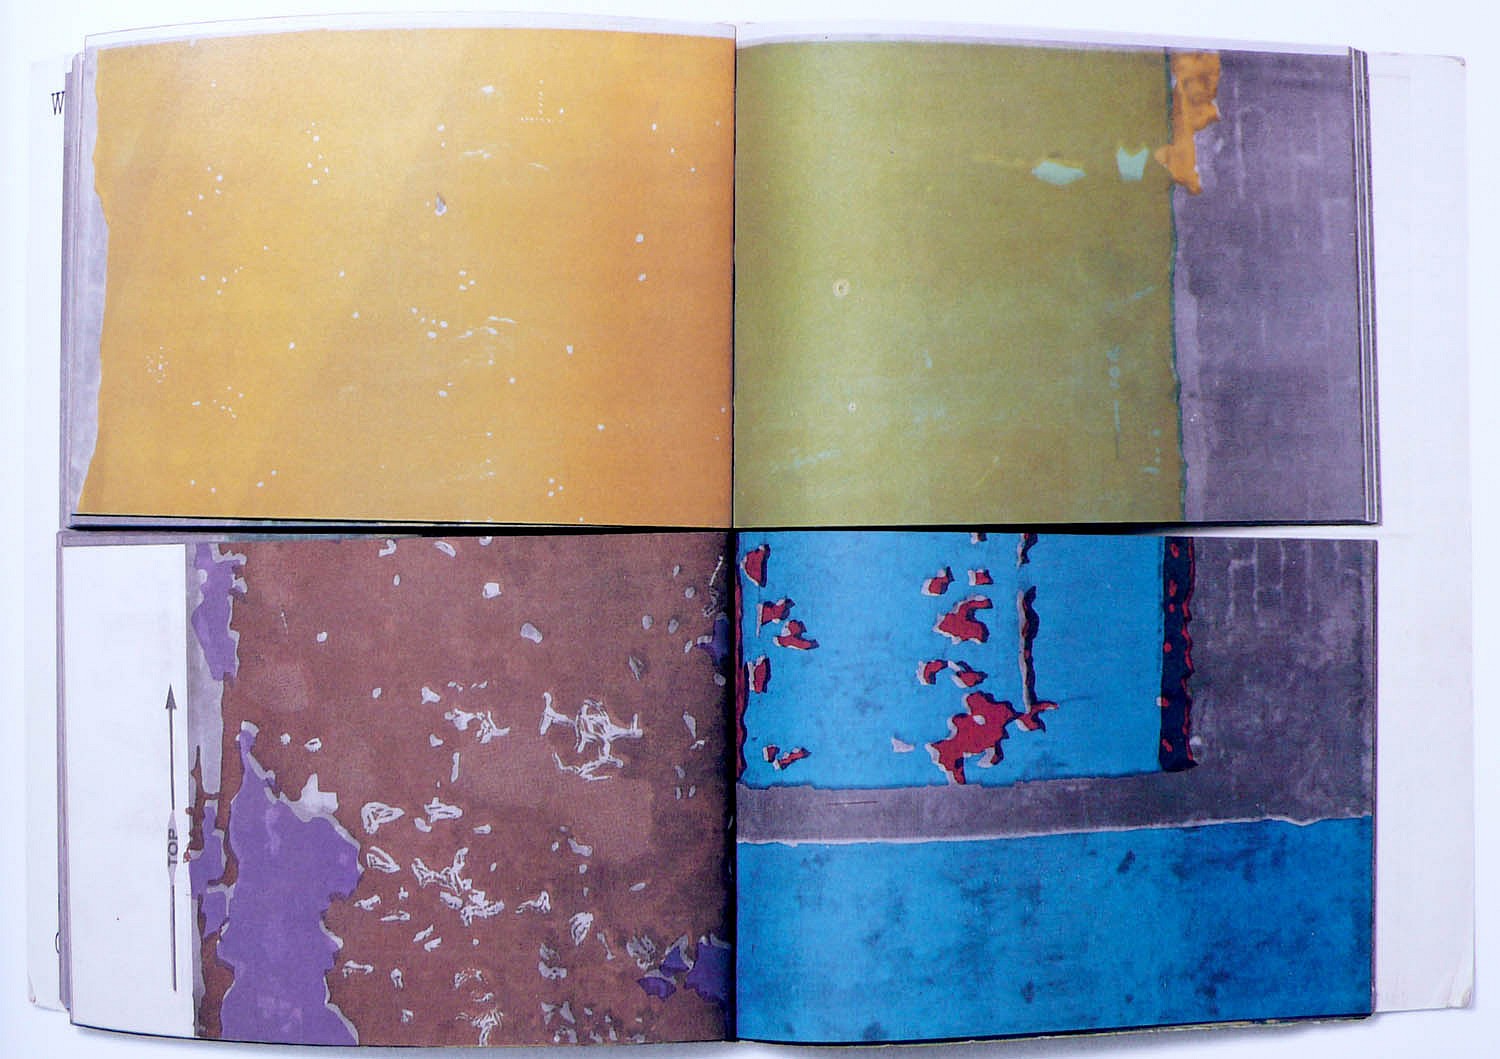 Gordon Matta-Clark | Walls paper Art Zucker | Books | 1973